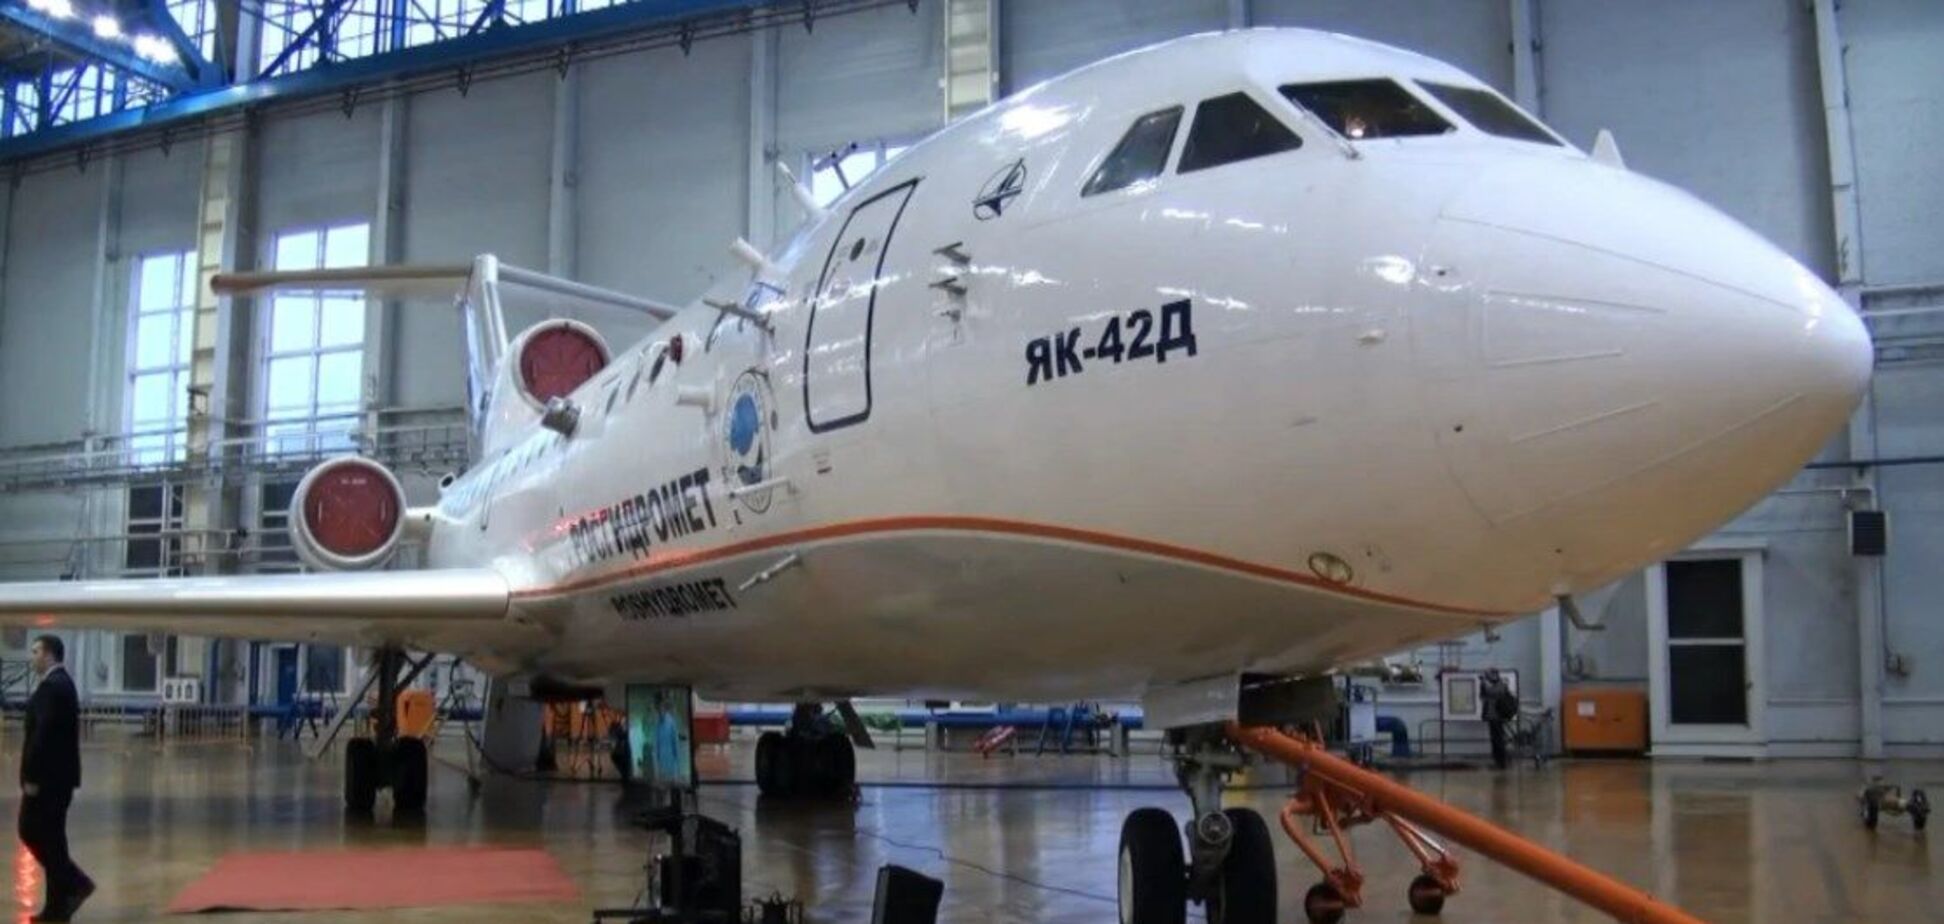 Як-42Д выполнил летал над Крымом несколько дней